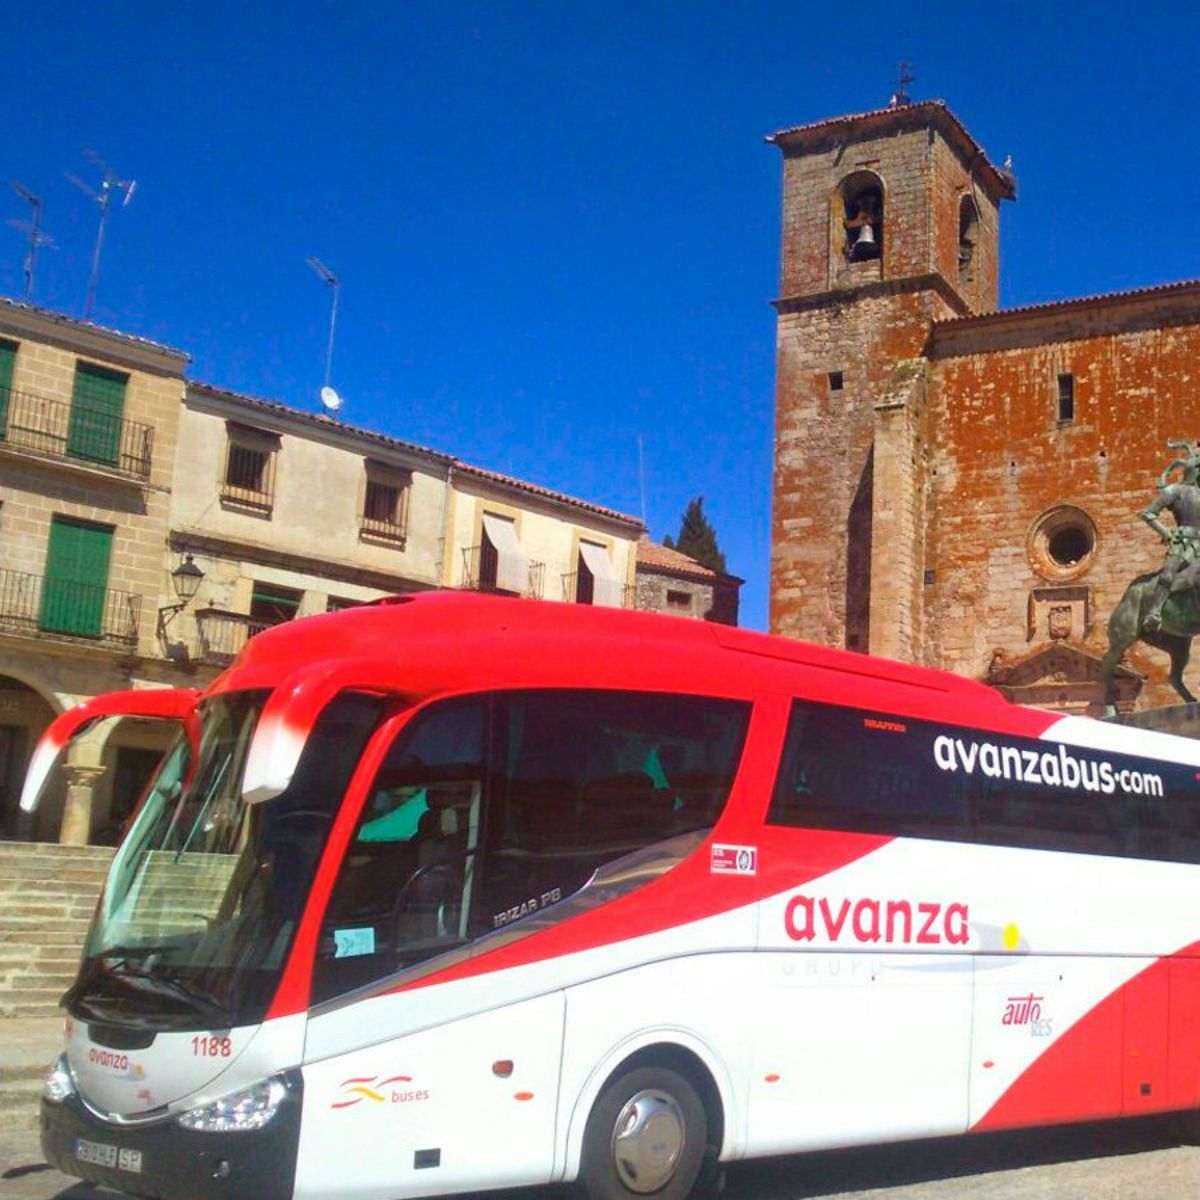 Avanzabus se desvincula del conductor que amenazó a Puigdemont